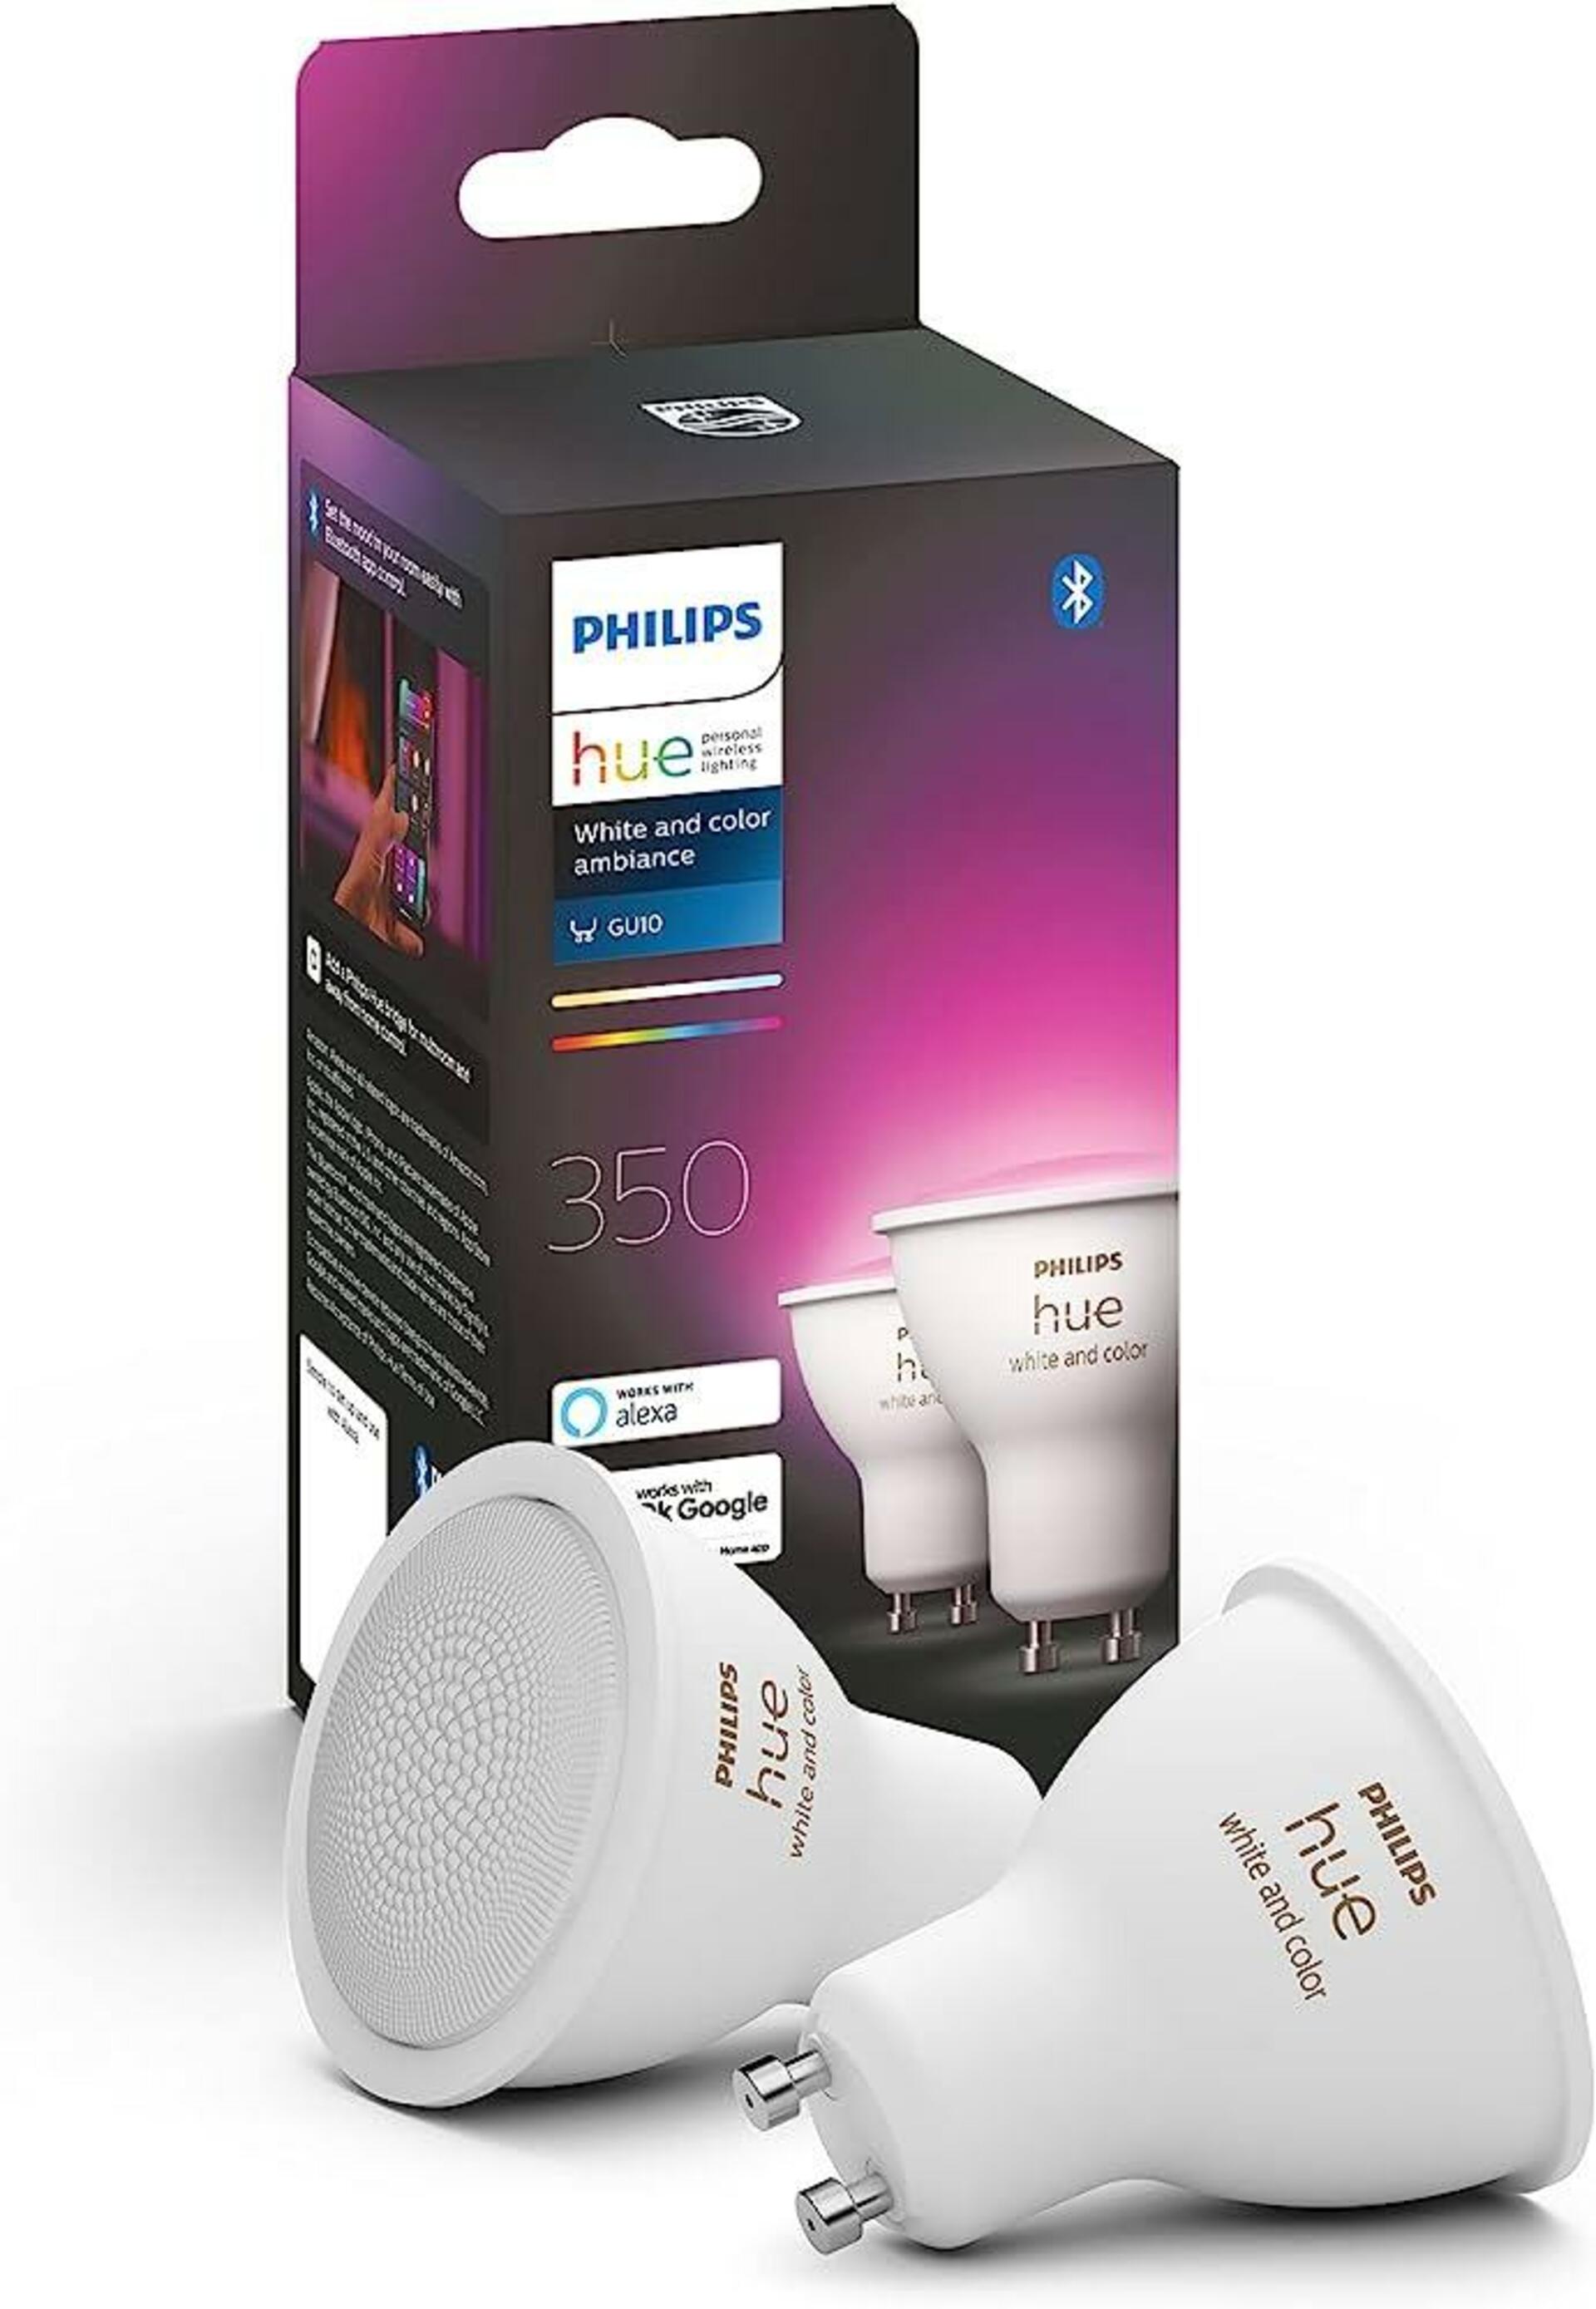 PHILIPS HUE Hue Bluetooth LED White and Color Ambiance žárovka GU10 5.7W 350lm 2000K-6500K RGB set 2 ks